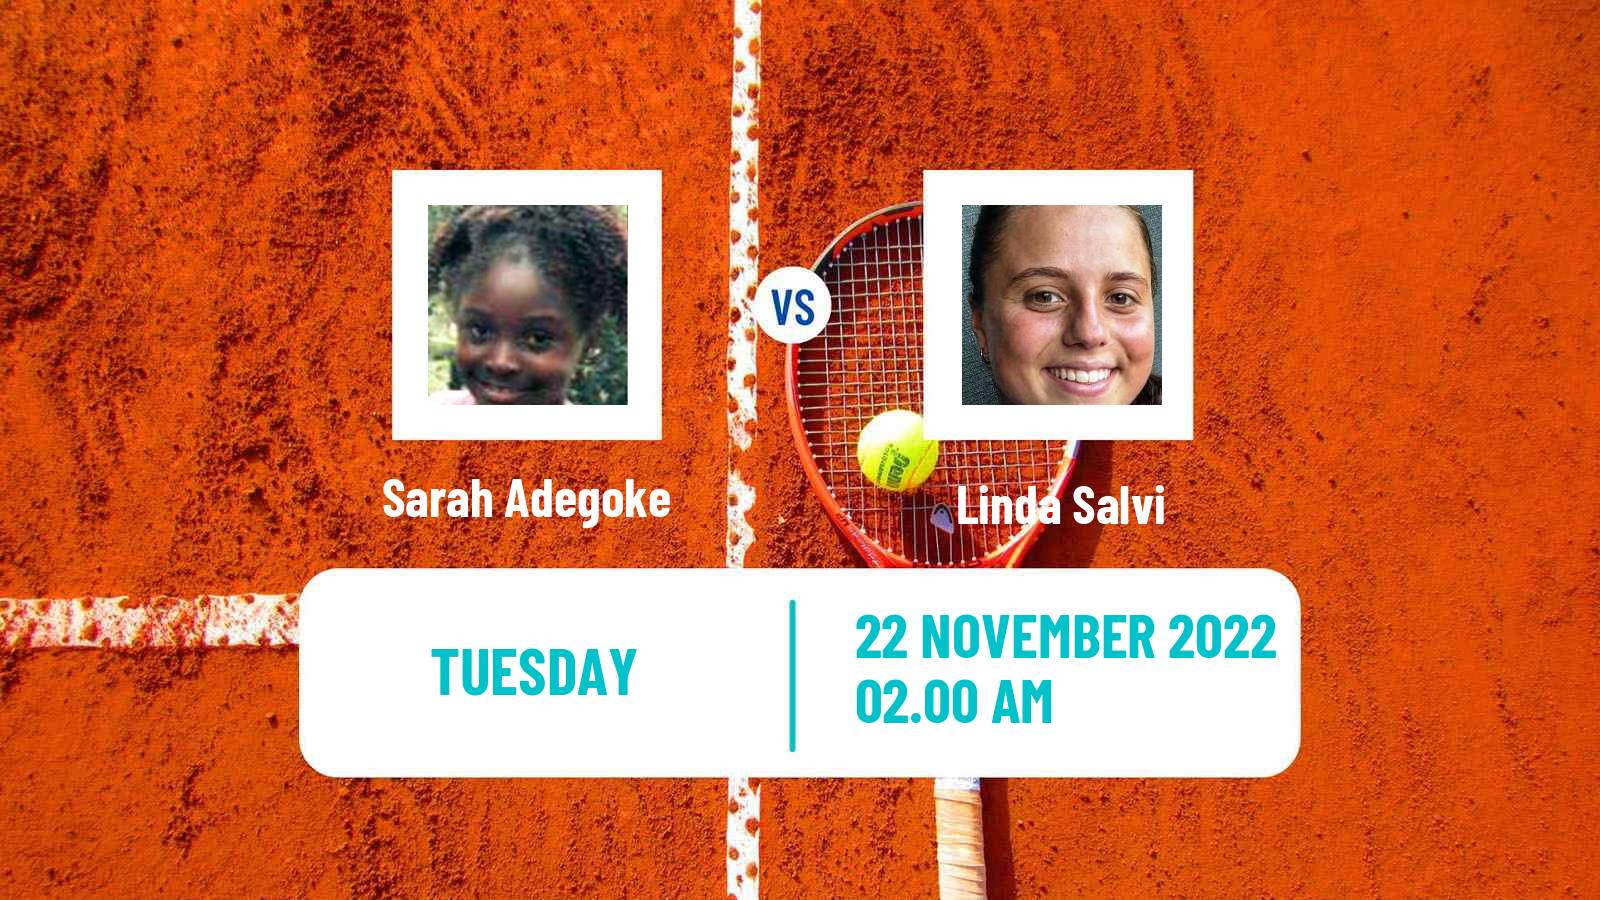 Tennis ITF Tournaments Sarah Adegoke - Linda Salvi